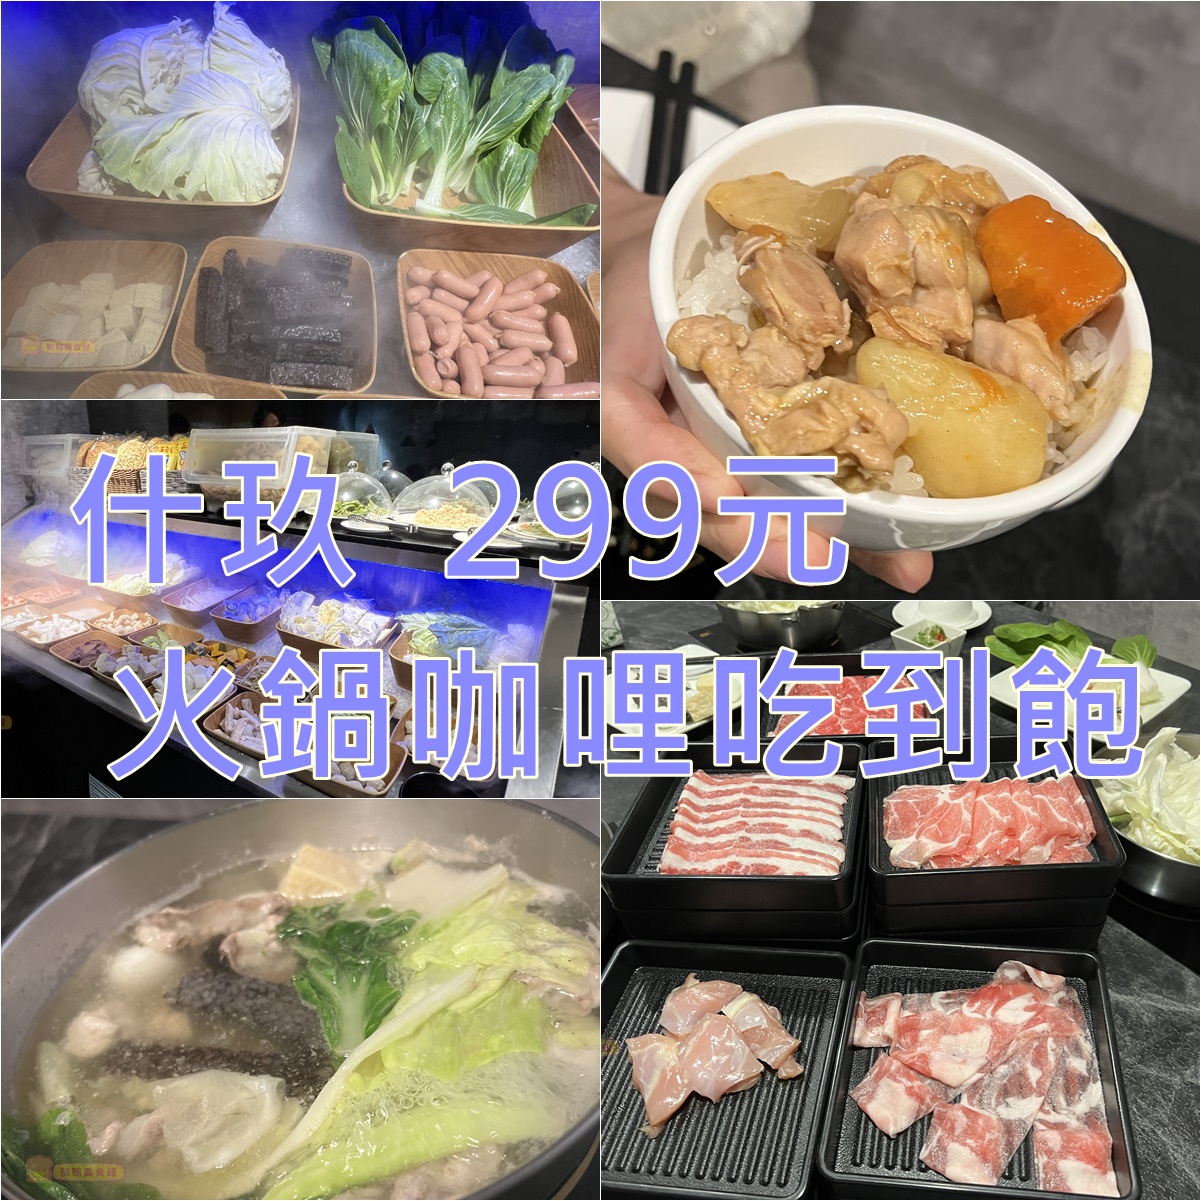 即時熱門文章：(4)台北中山區。什玖日式鍋物~329元咖哩飯加肉片、鮮蔬、霜淇淋吃到飽